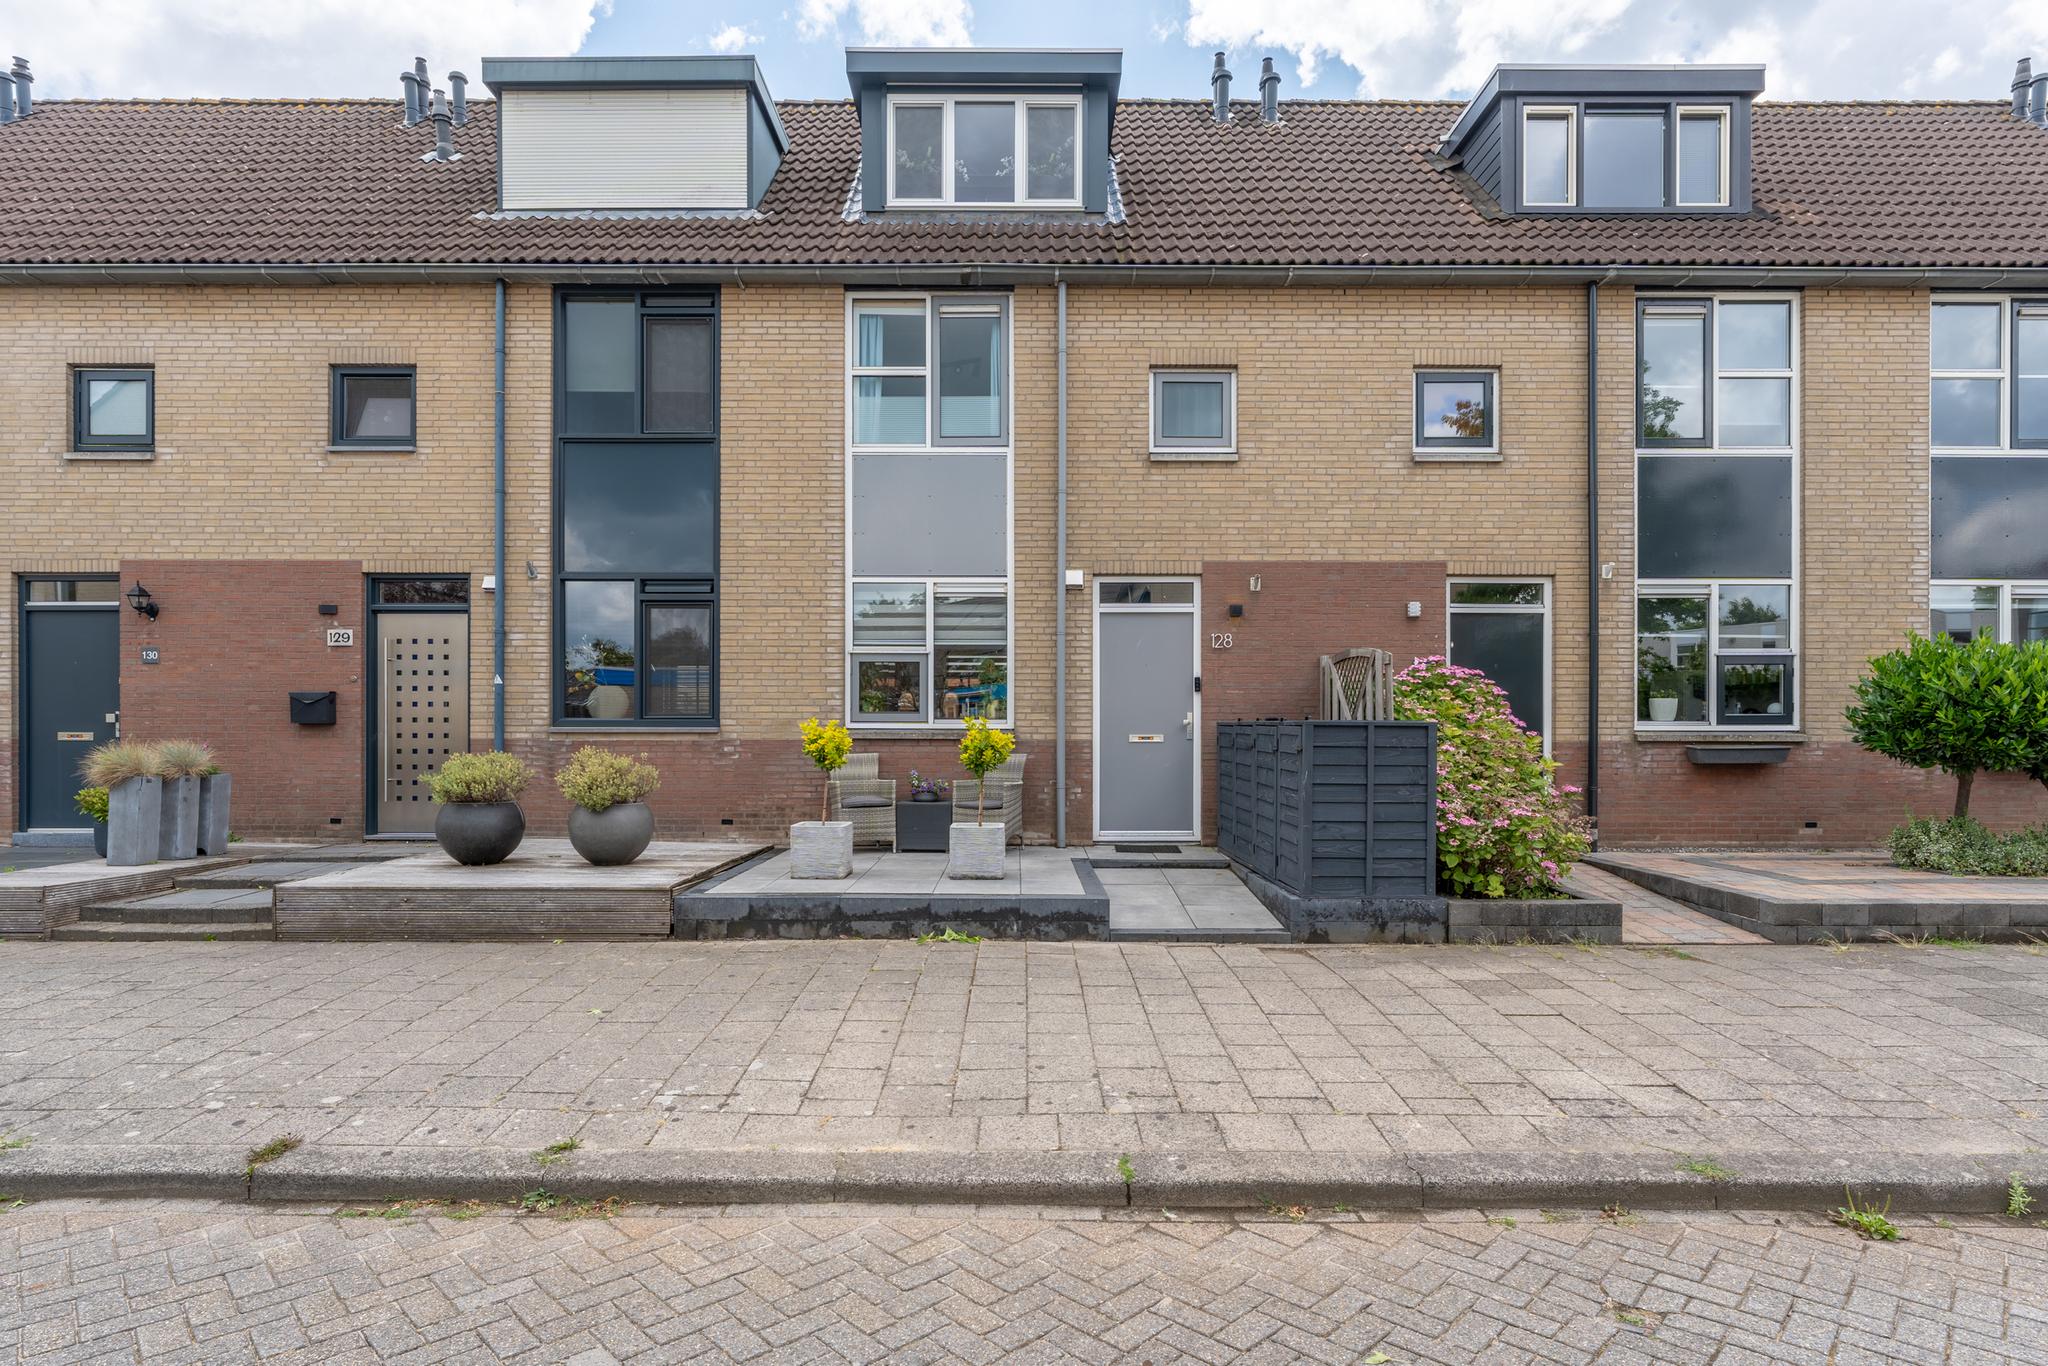 Foto Van den Broek-erf 128 – Dordrecht